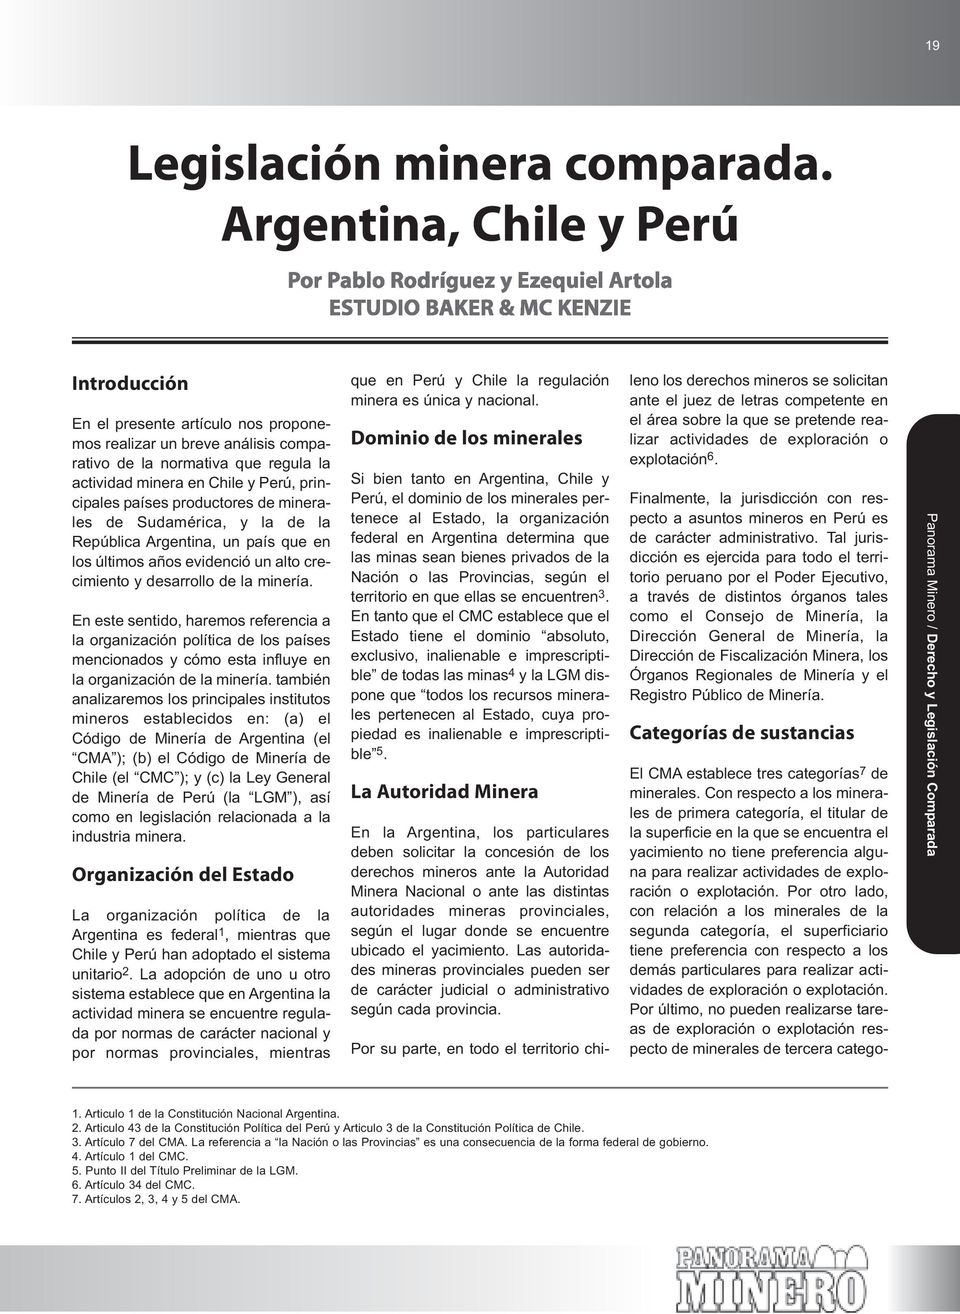 productores de minerales de Sudamérica, y la de la República Argentina, un país que en los últimos años evidenció un alto crecimiento y desarrollo de la minería.